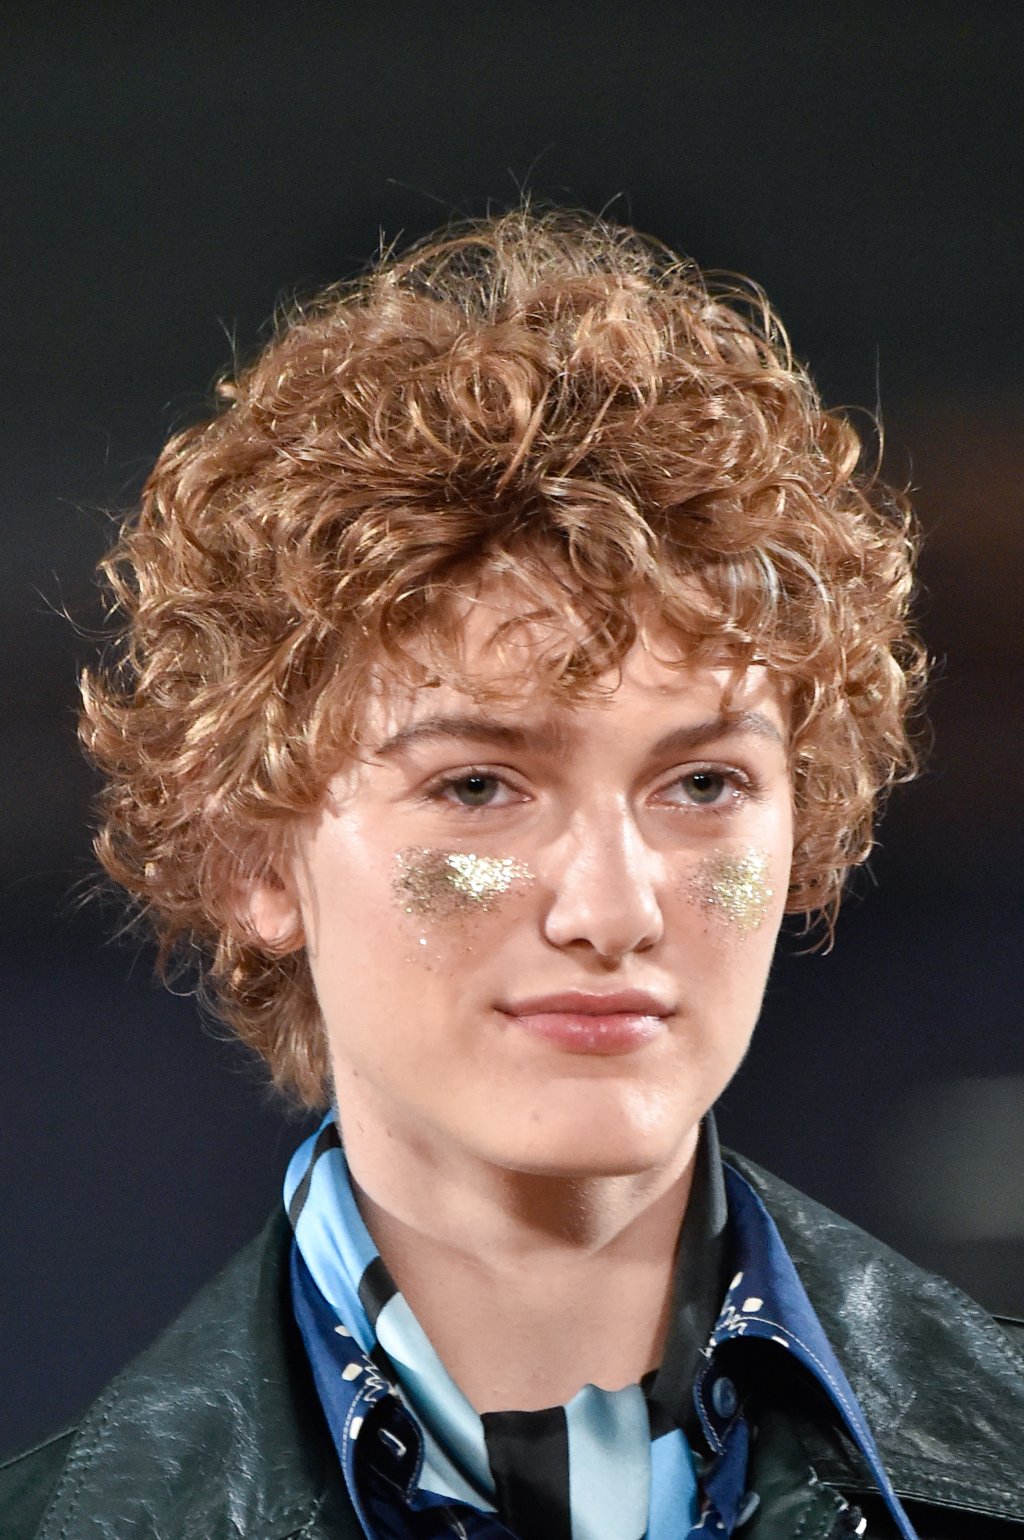 xu hướng trang điểm glitter như người mẫu trong show diễn Marc Jacobs